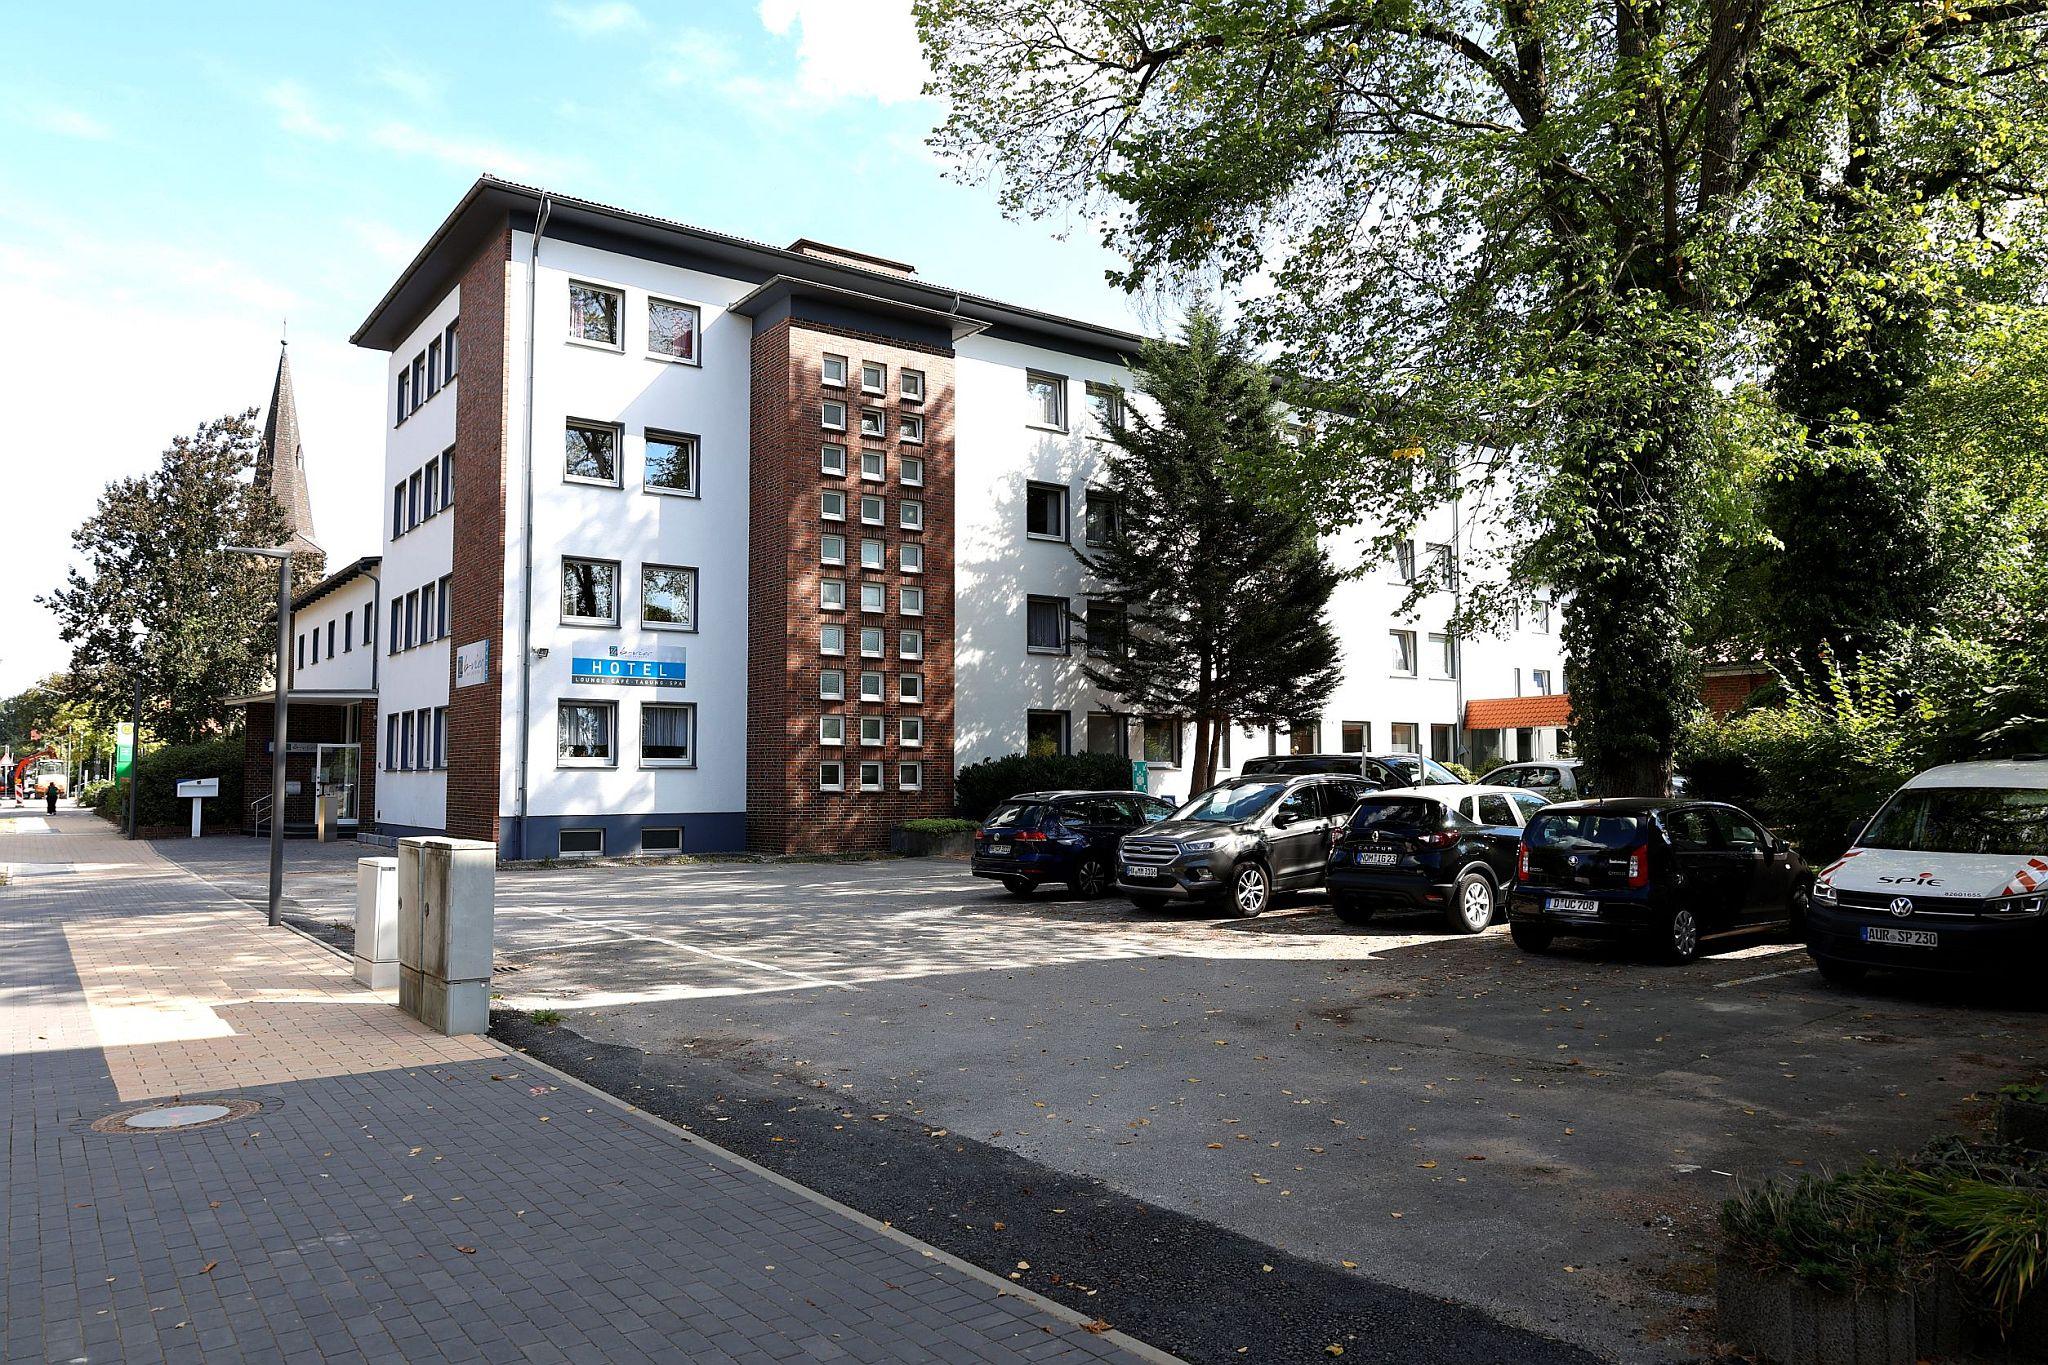 Parkplatz des B-vier Hotel Bad Driburg